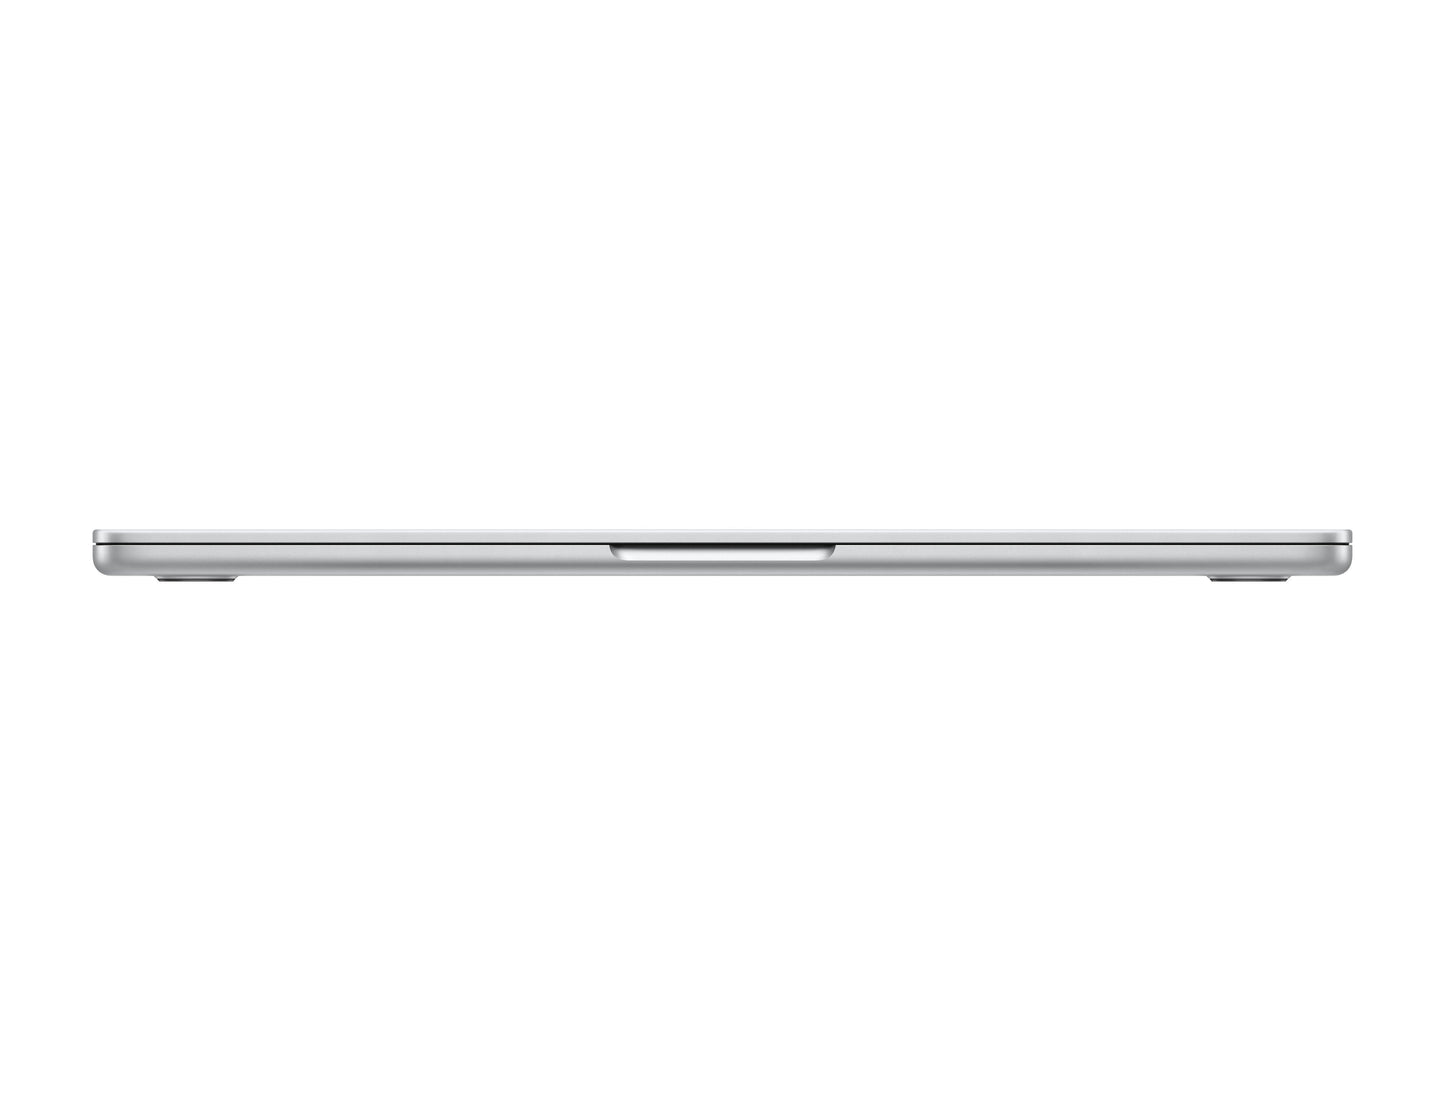 Apple MacBook Air - 13 inch (8-Core CPU/8-Core GPU)